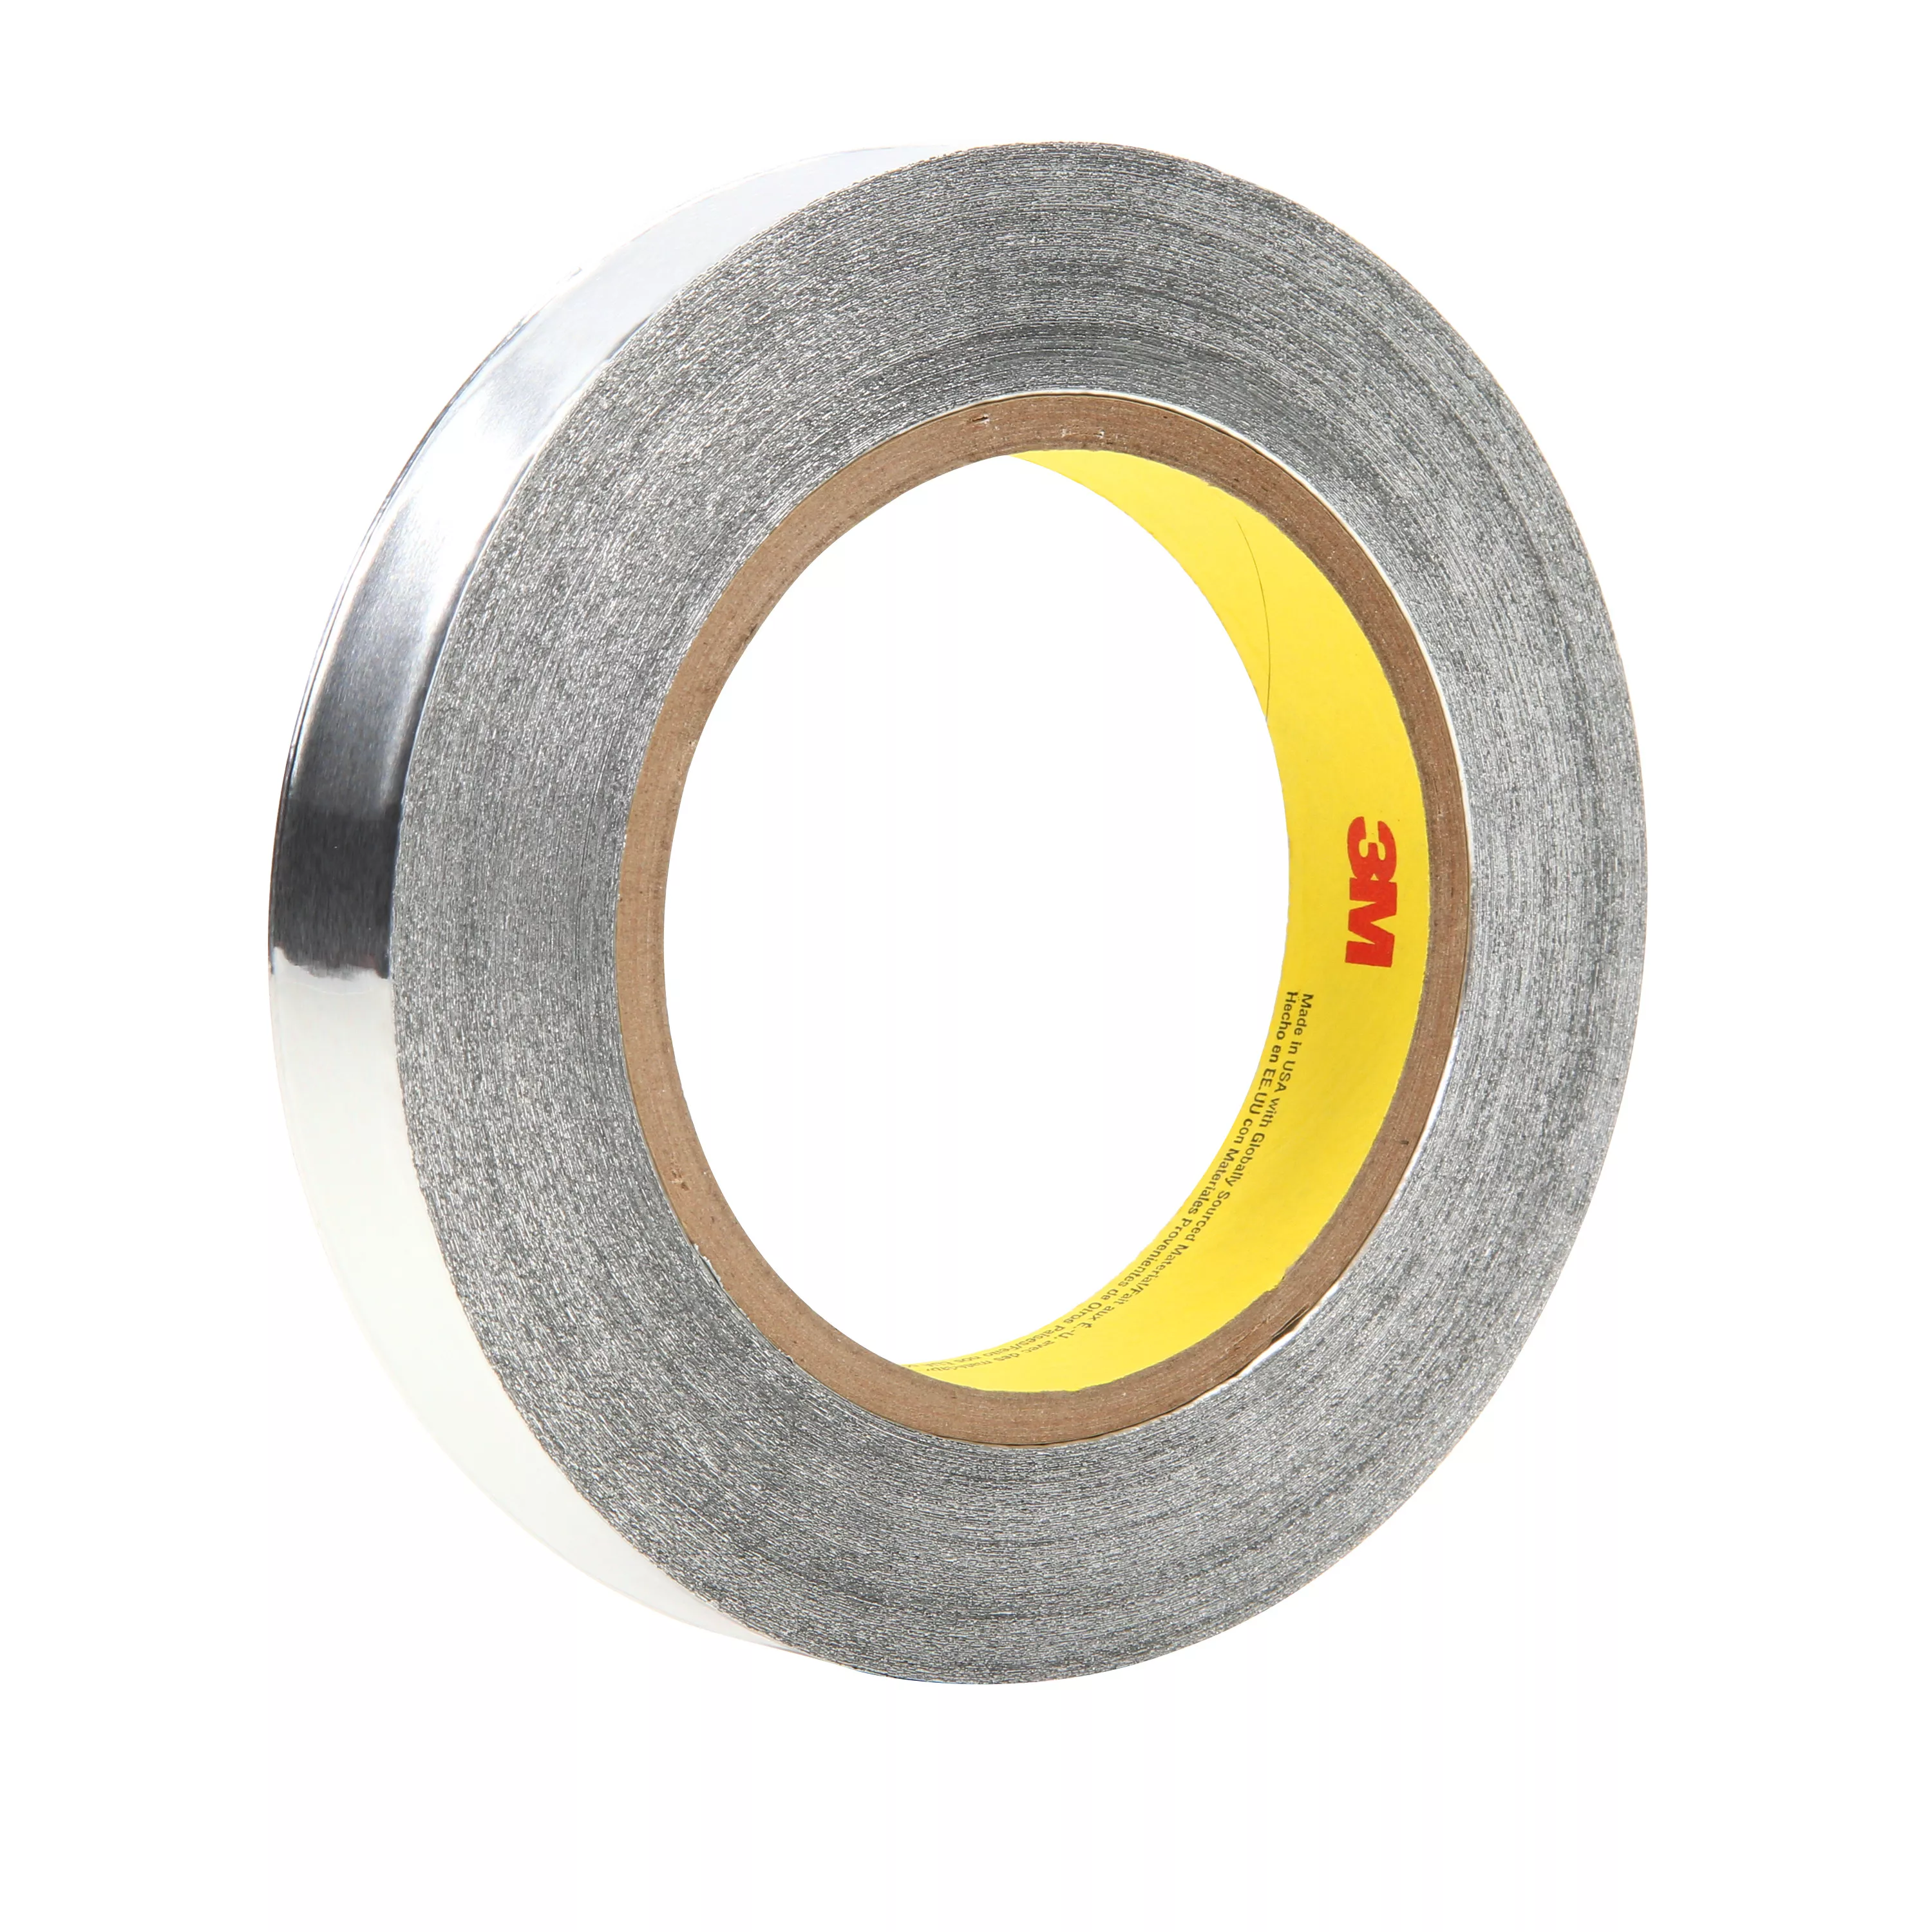 3M™ Aluminum Foil Tape 425 LT80, Silver, 3/4 in x 60 yd, 4.6 mil, 64
rolls per case